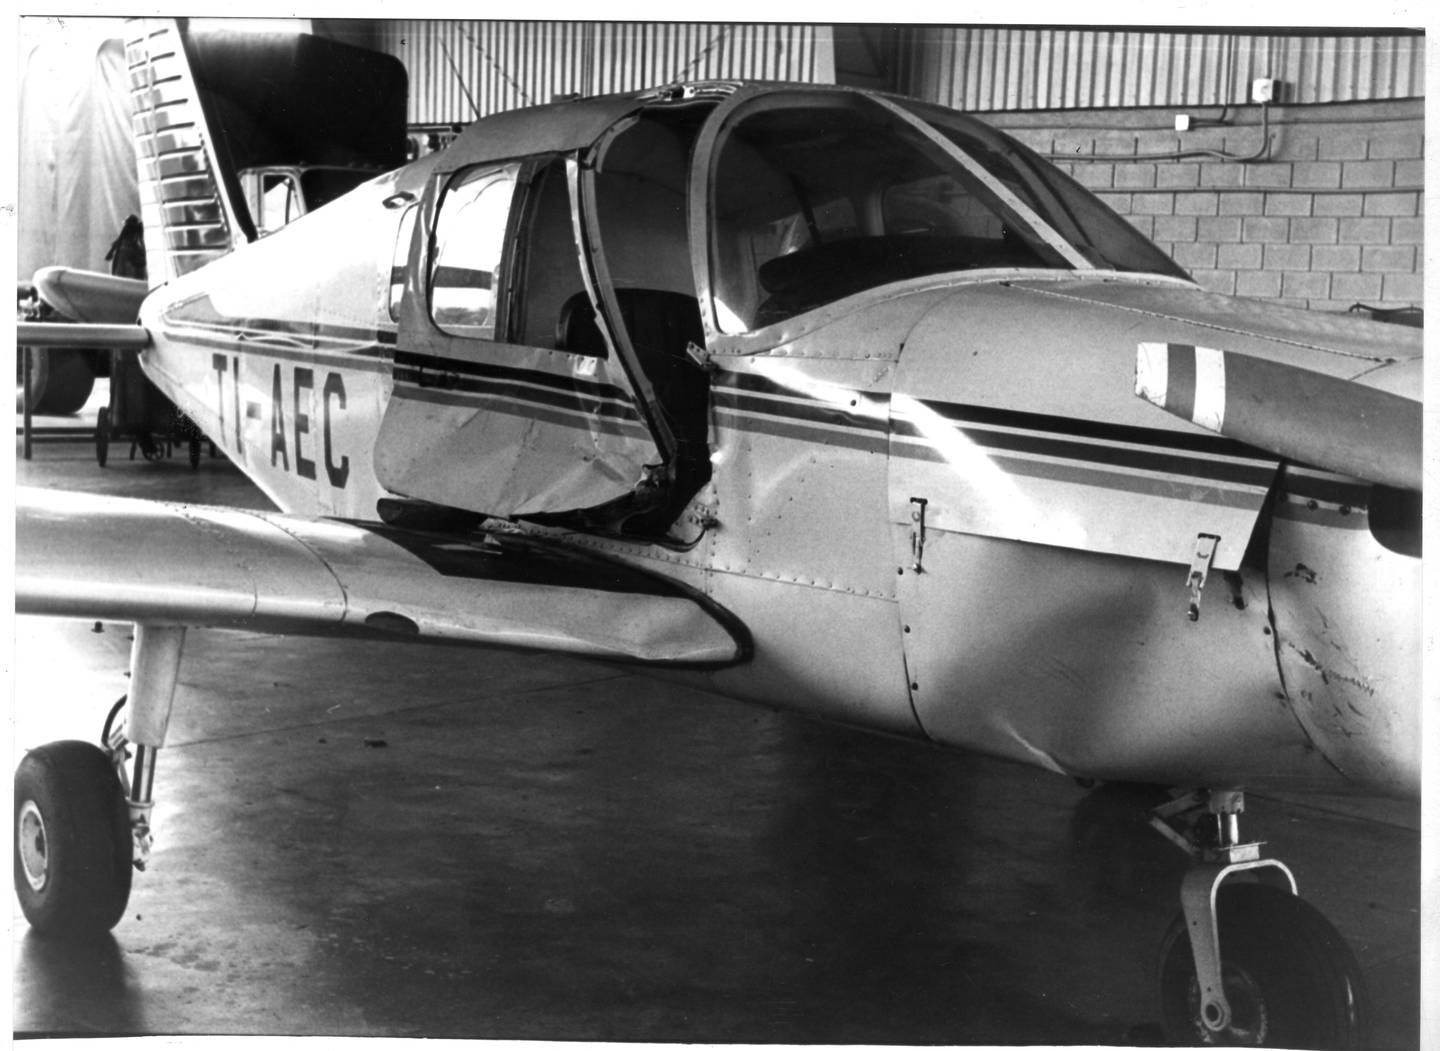 17 de agosto de 1990. Avioneta se estrella contra casa en Santa Ana. En el hecho muere Chusaku Nomura, embajador de japón en Costa Rica. Fotos Archivo.